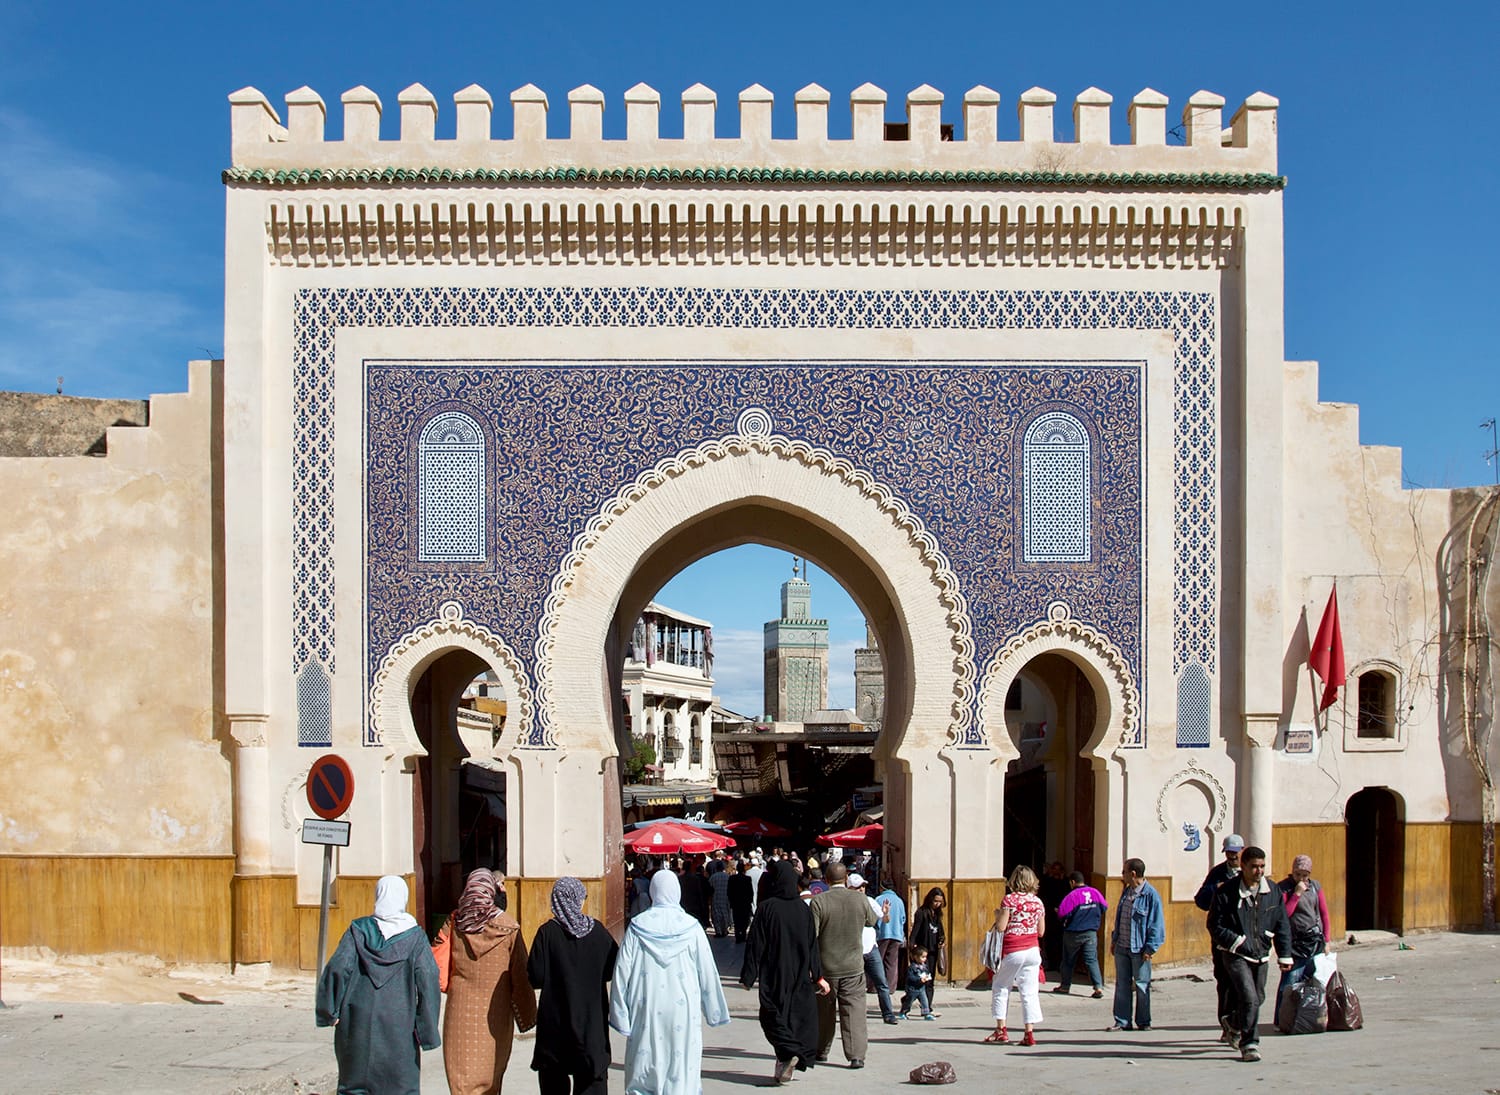 Πύλη Bab Bou Jeloud (μπλε πύλη), Φεζ, Μαρόκο